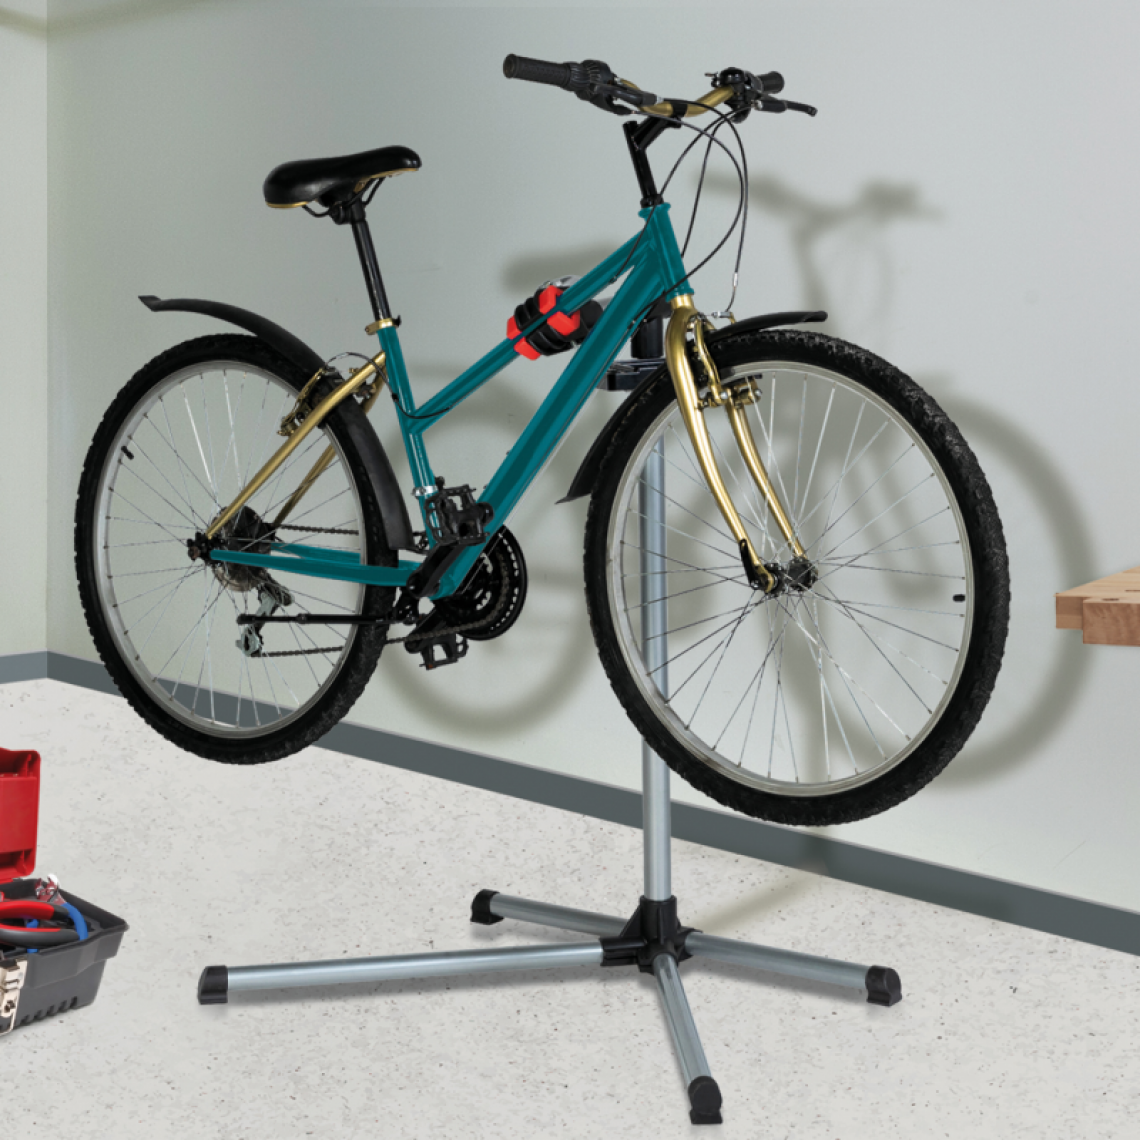 Idmarket - Pied d'atelier pour vélos support d'entretien et de réparation réglable max 20 kg - Vélo électrique